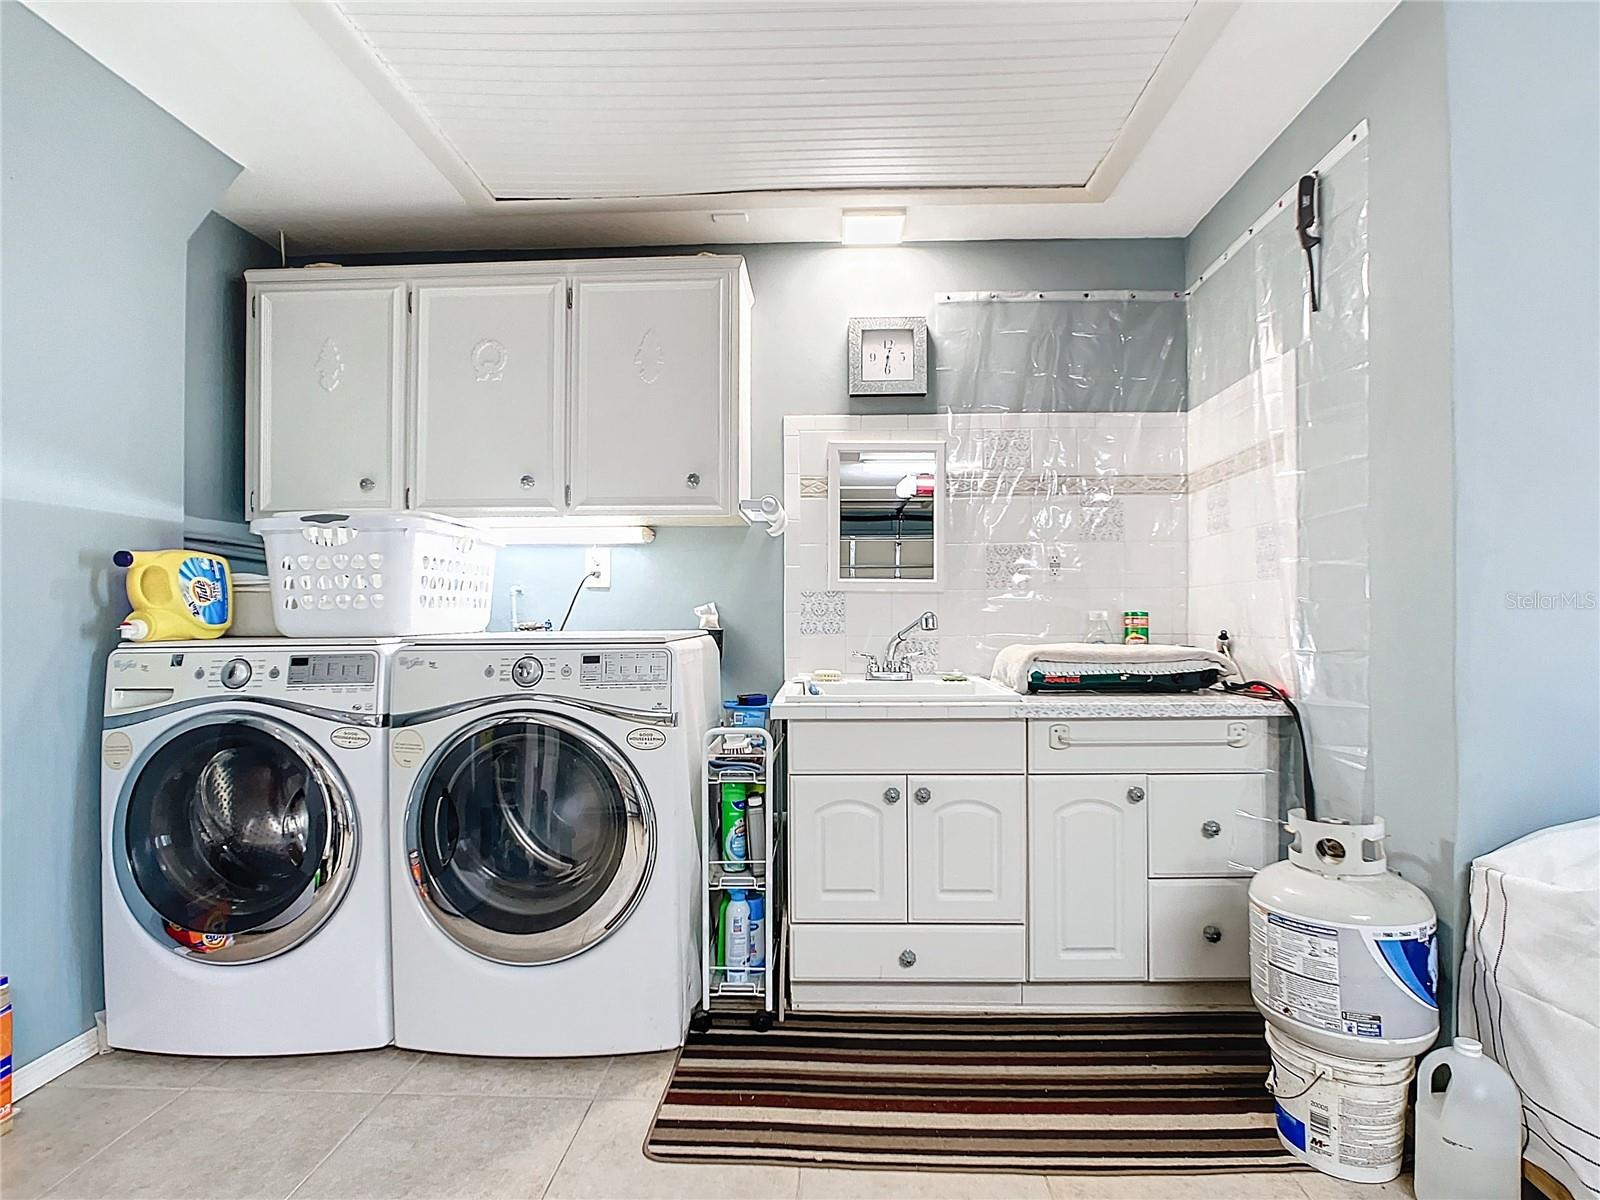 Laundry Area - Possible Dog Washing Station